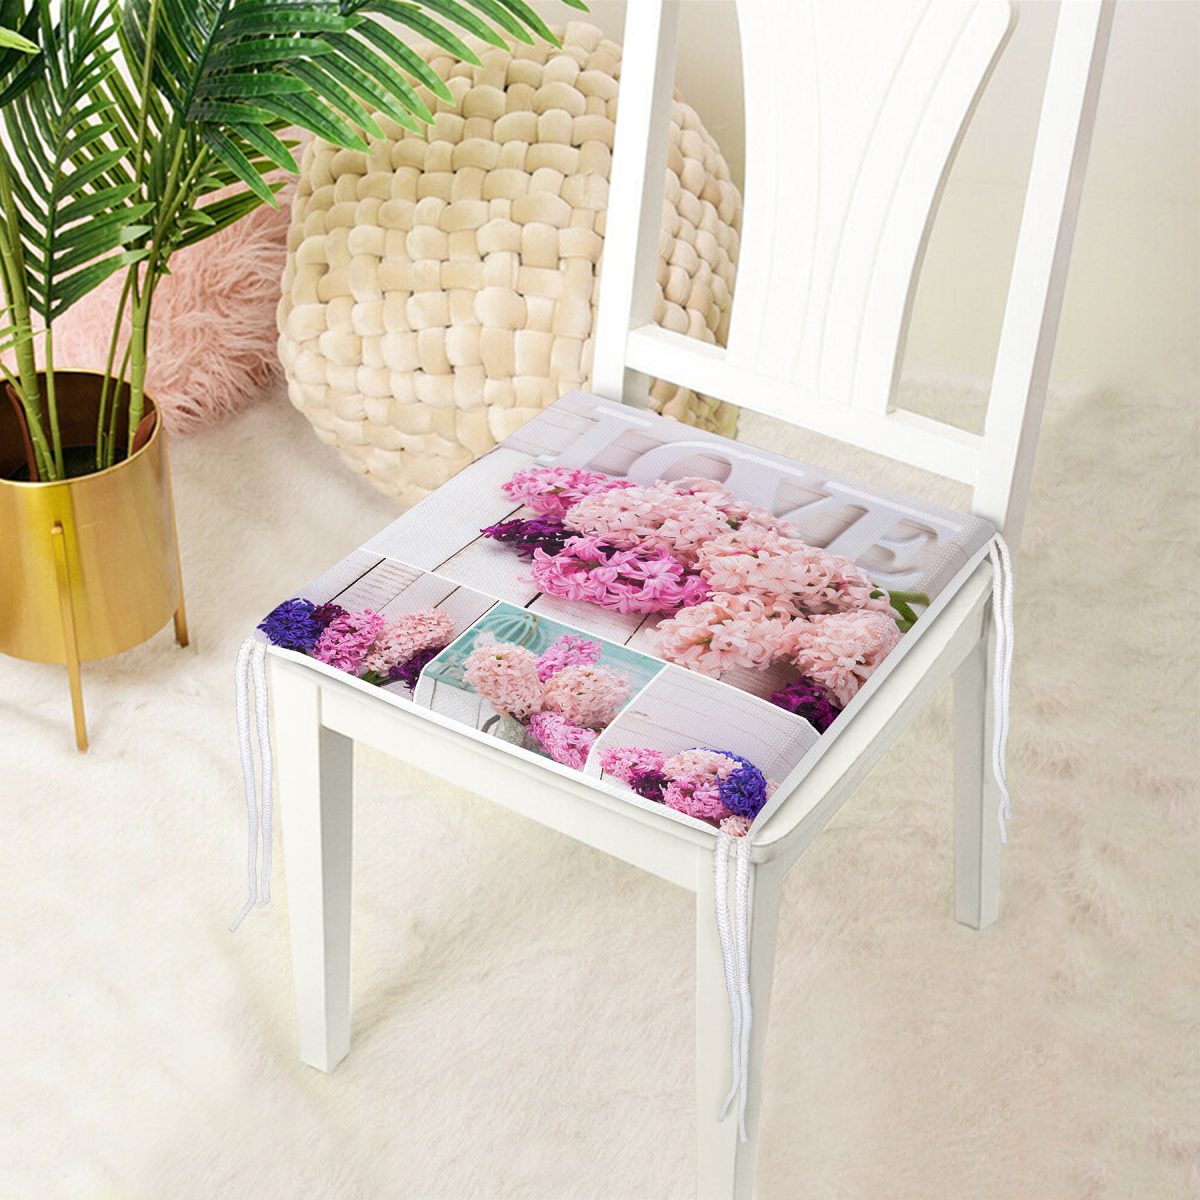 Çiçek Desenli Dekorati Kare Sandalye Minderi 40x40cm Fermuarlı Realhomes